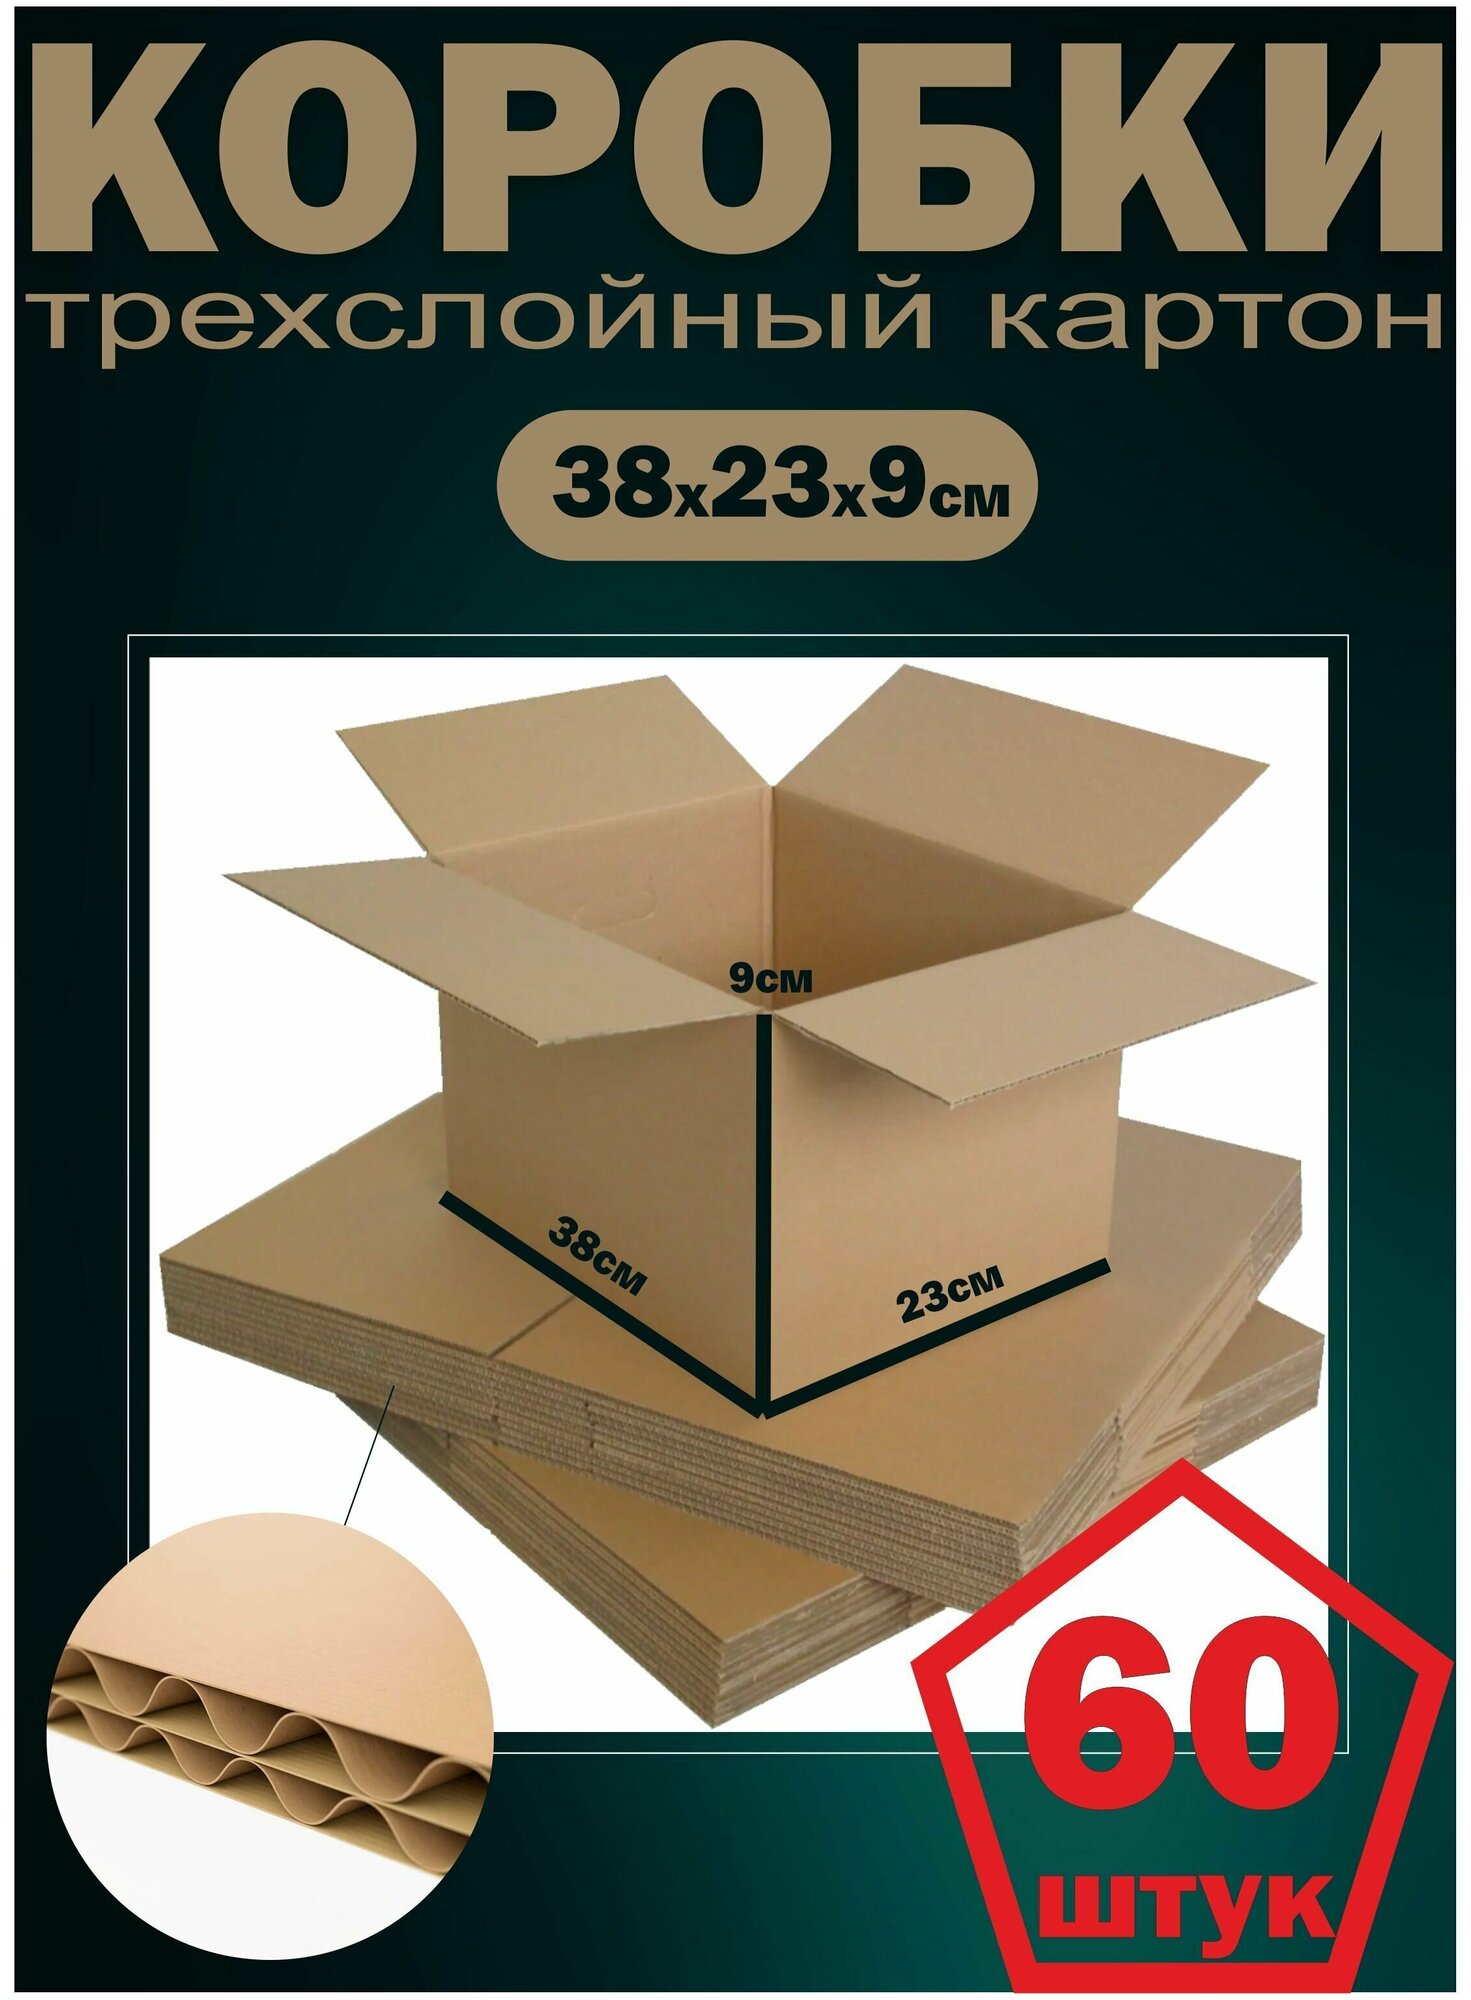 Картонные коробки набор 60шт упаковка для поставок на маркетплейсы 380х230х90мм трехслойный гофрокартон Т22 Рекламастер - фотография № 11